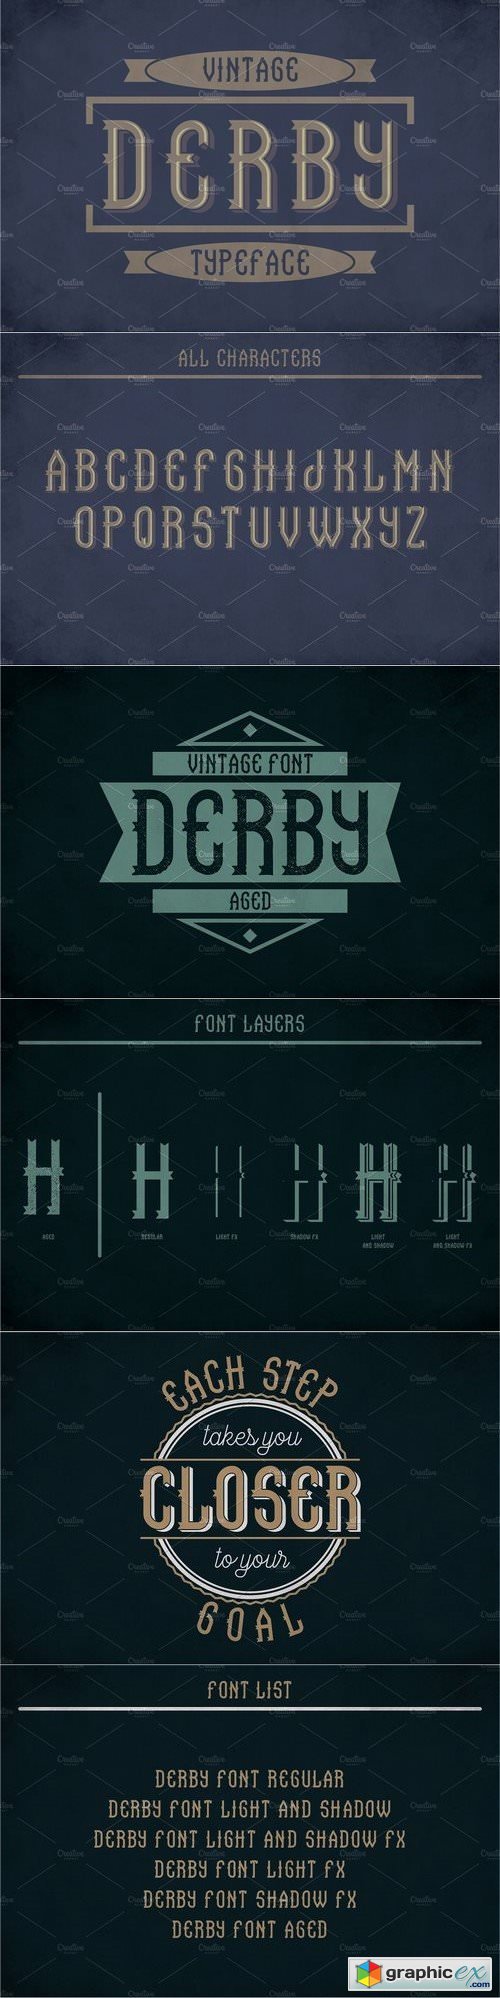 Derby Vintage Label Typeface